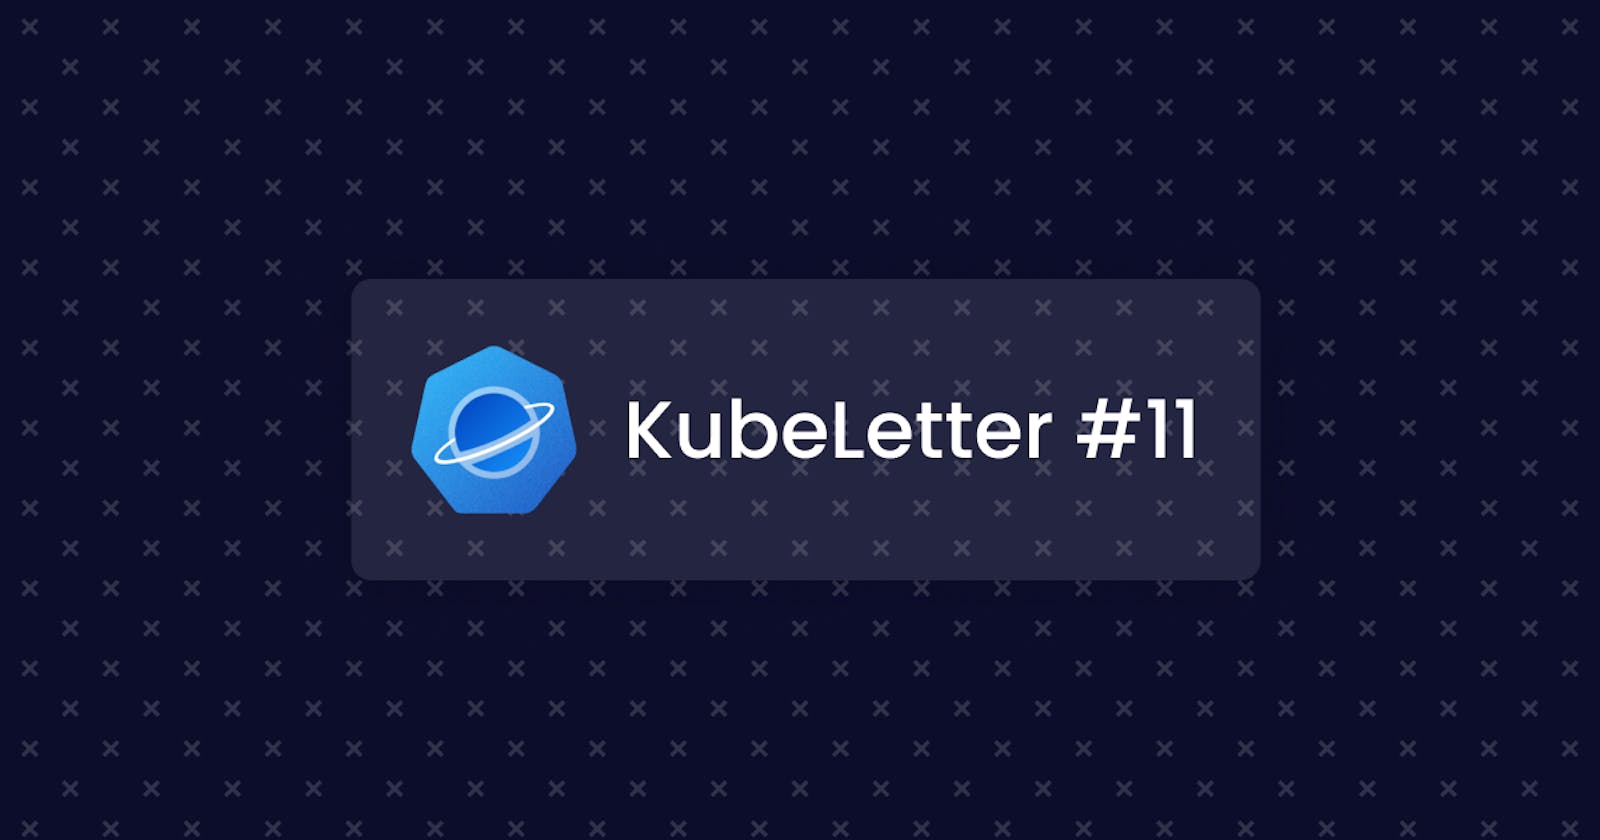 KubeLetter #11